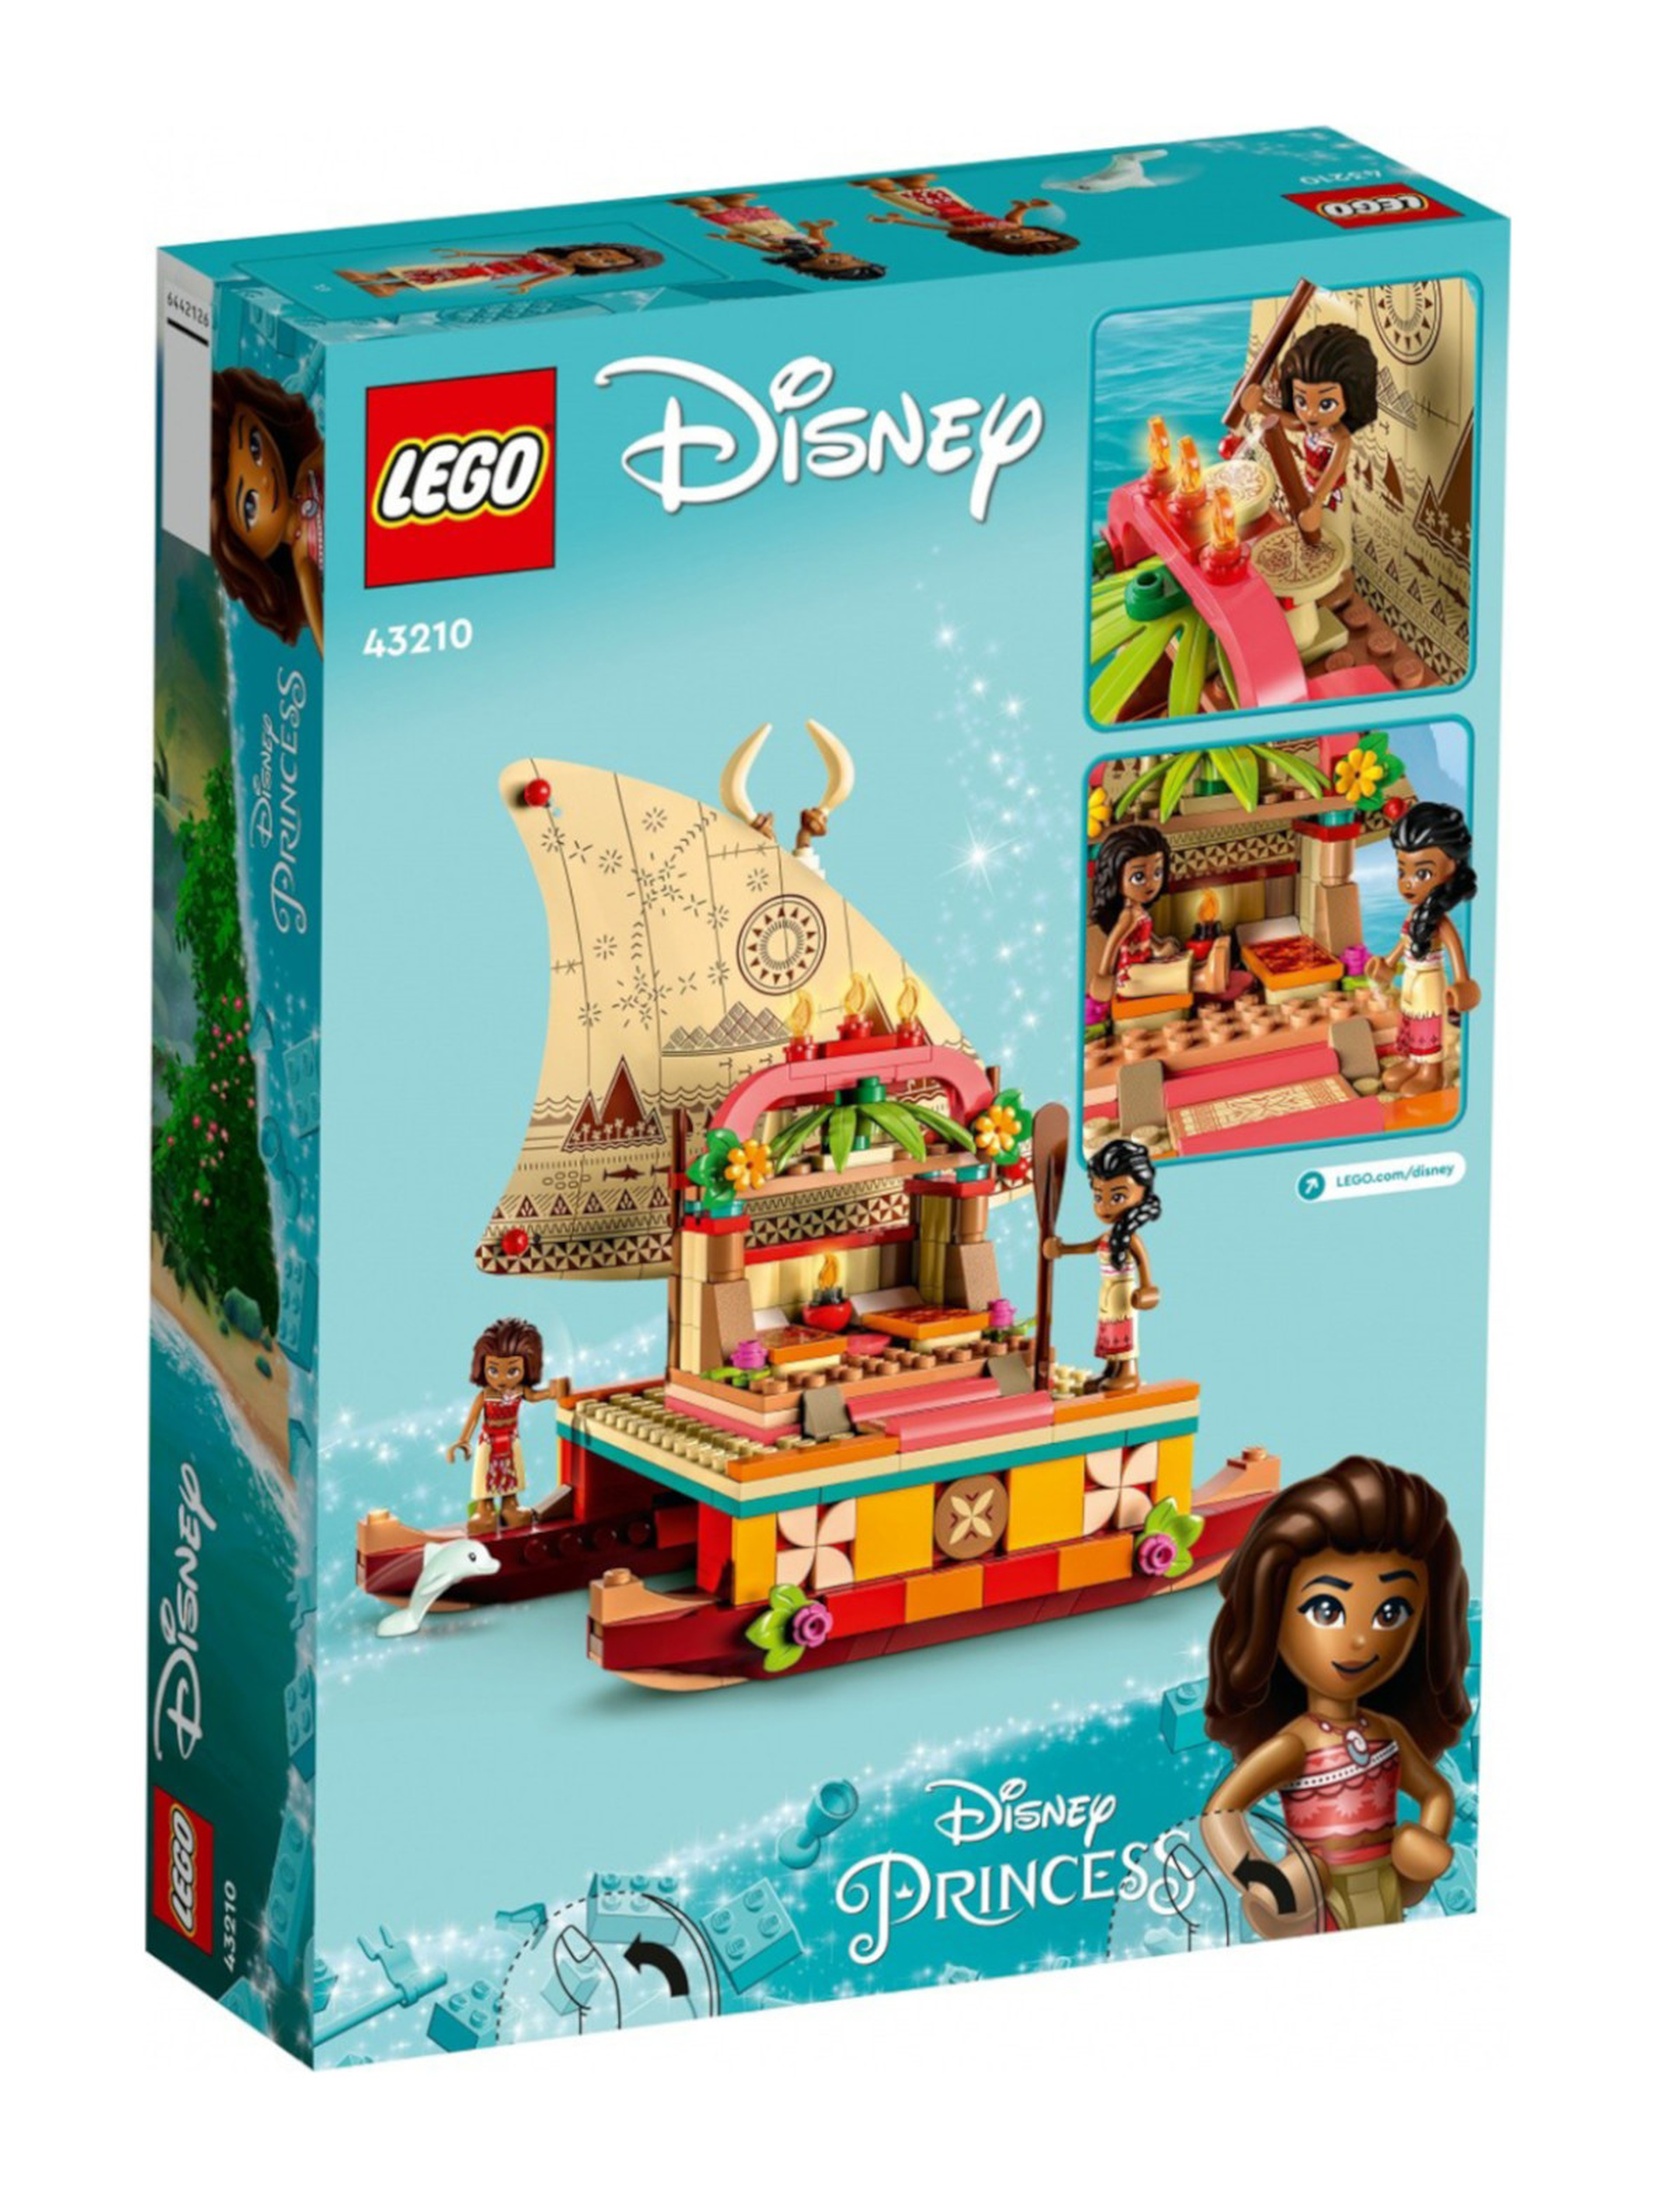 Klocki LEGO Disney Princess 43210 Katamaran Vaiany - 321 elementów, wiek 6 +